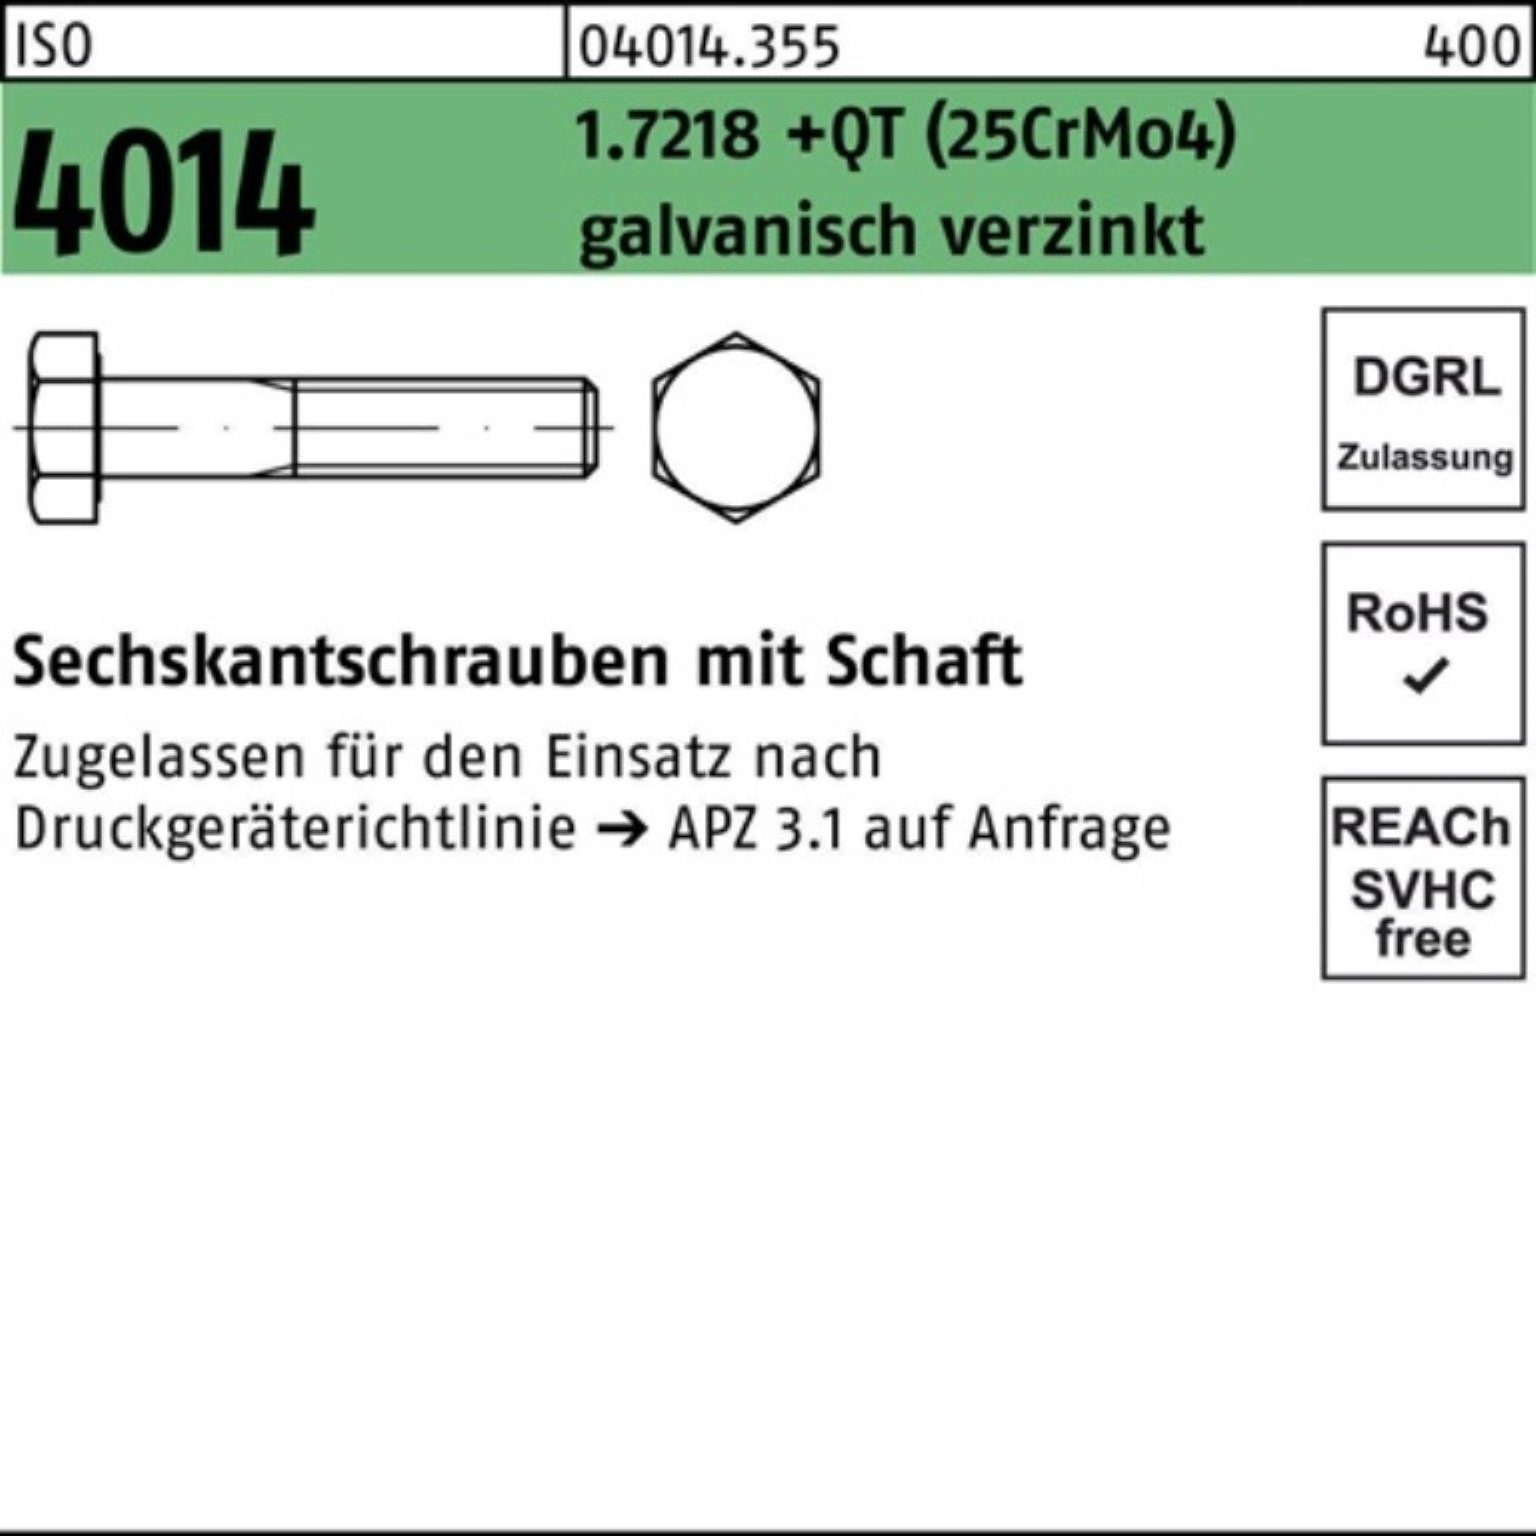 Sechskantschraube 100er 1.7218 Schaft (25CrM Pack Sechskantschraube +QT Bufab M20x170 4014 ISO